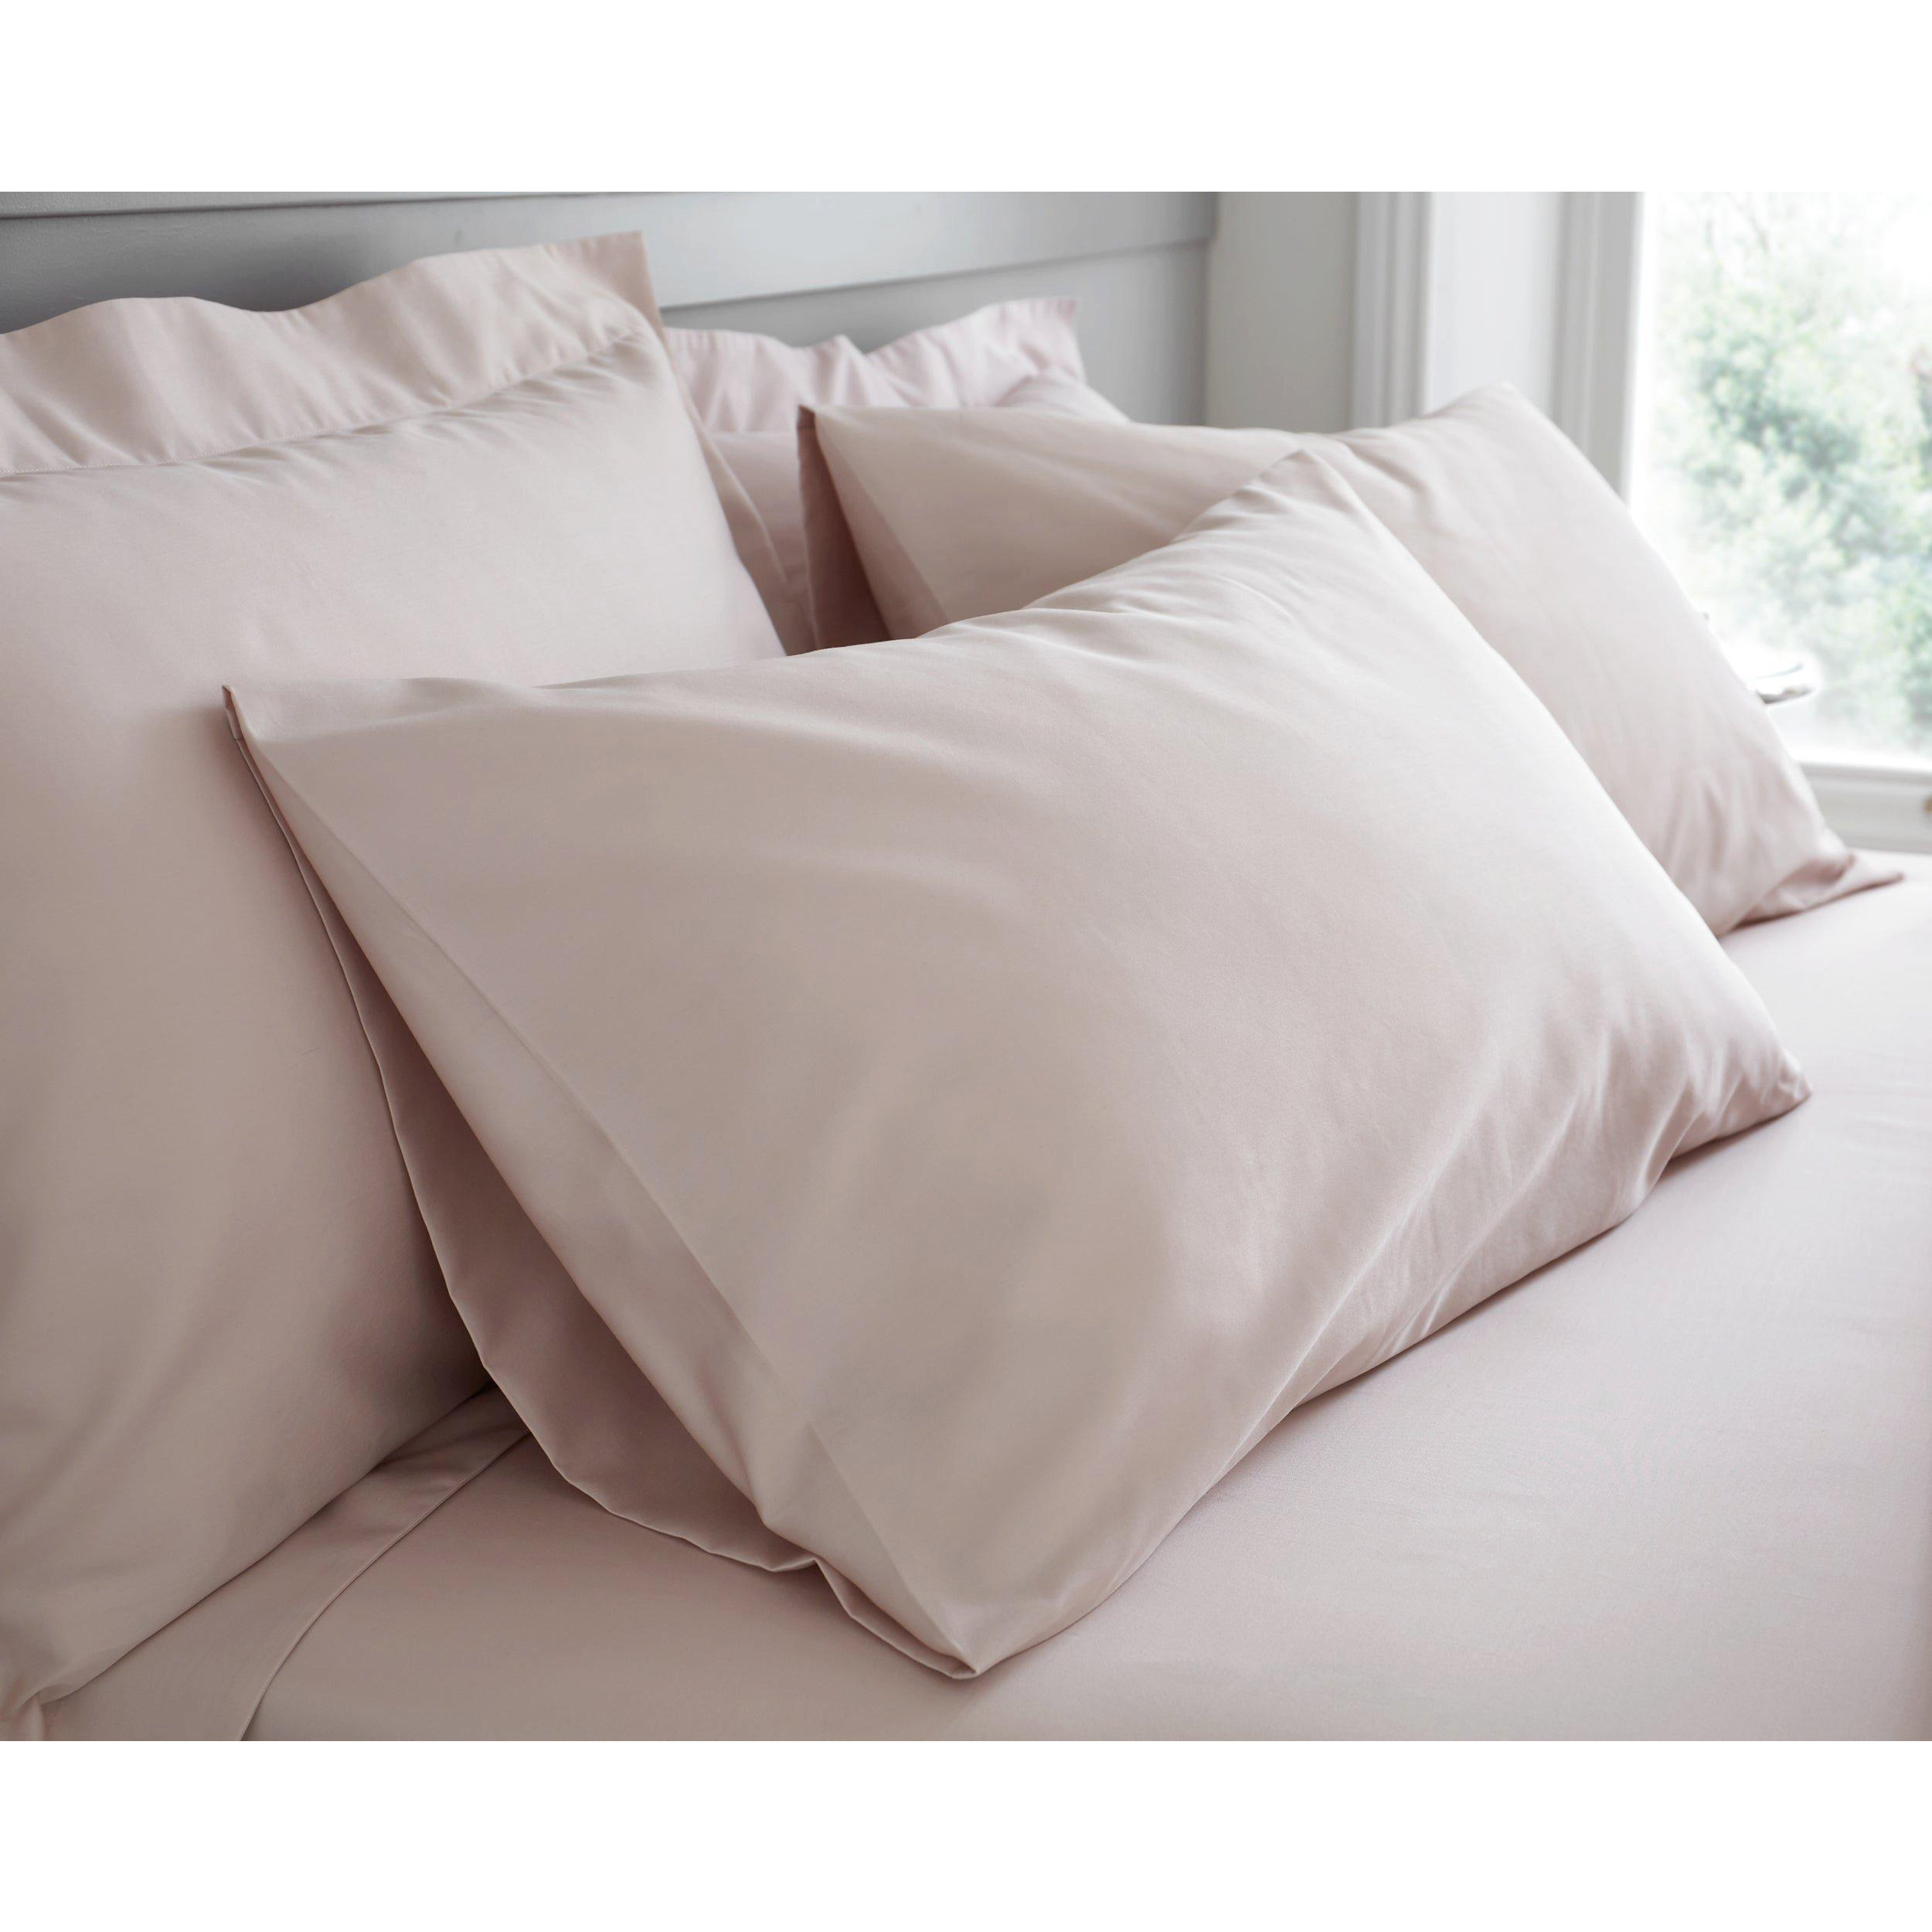 Whitworth Sateen Pillowcase Set - image 1